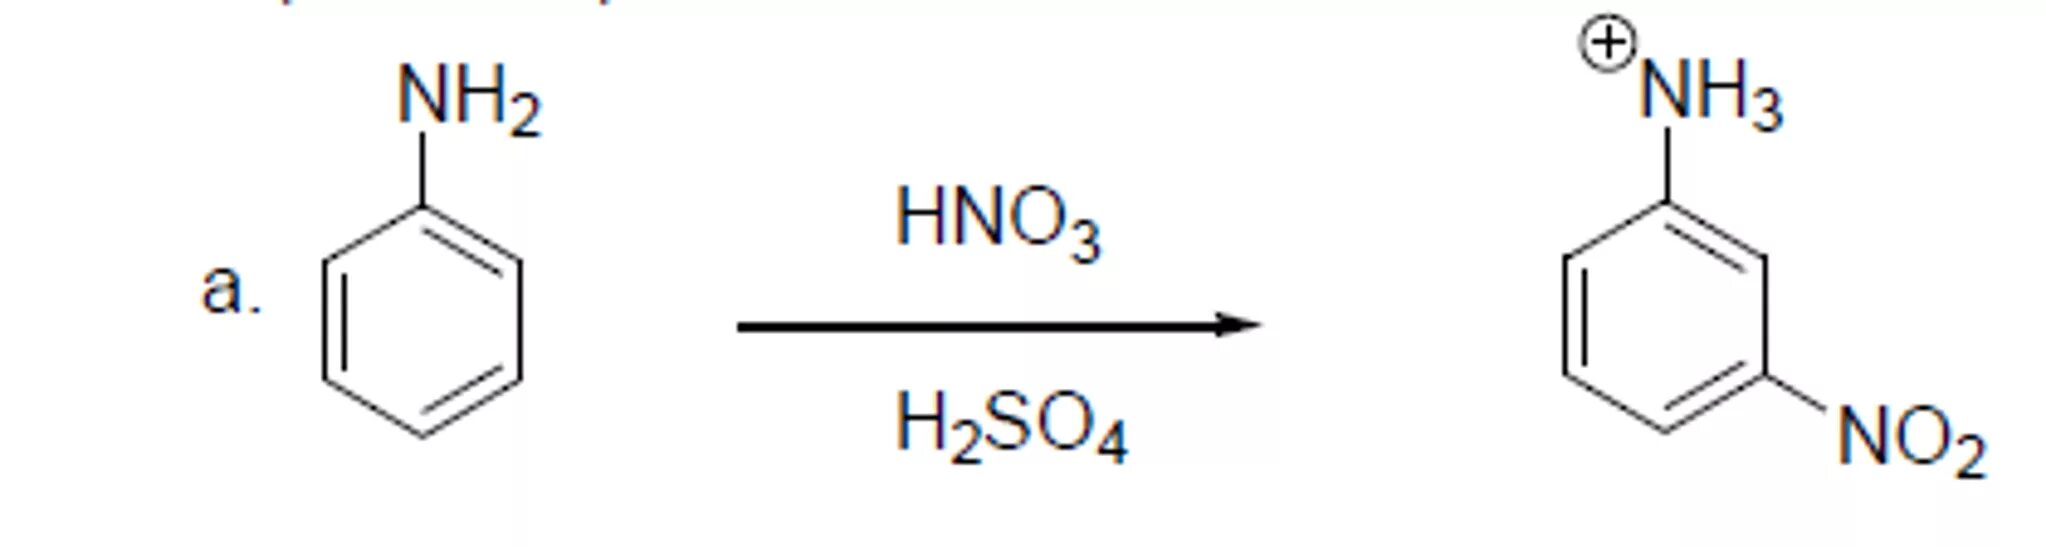 Этилфениловый эфир формула. Анилин h2so4. C6h5nh2 hno2. Анилин hno3 h2so4. Nh3 р р hno3